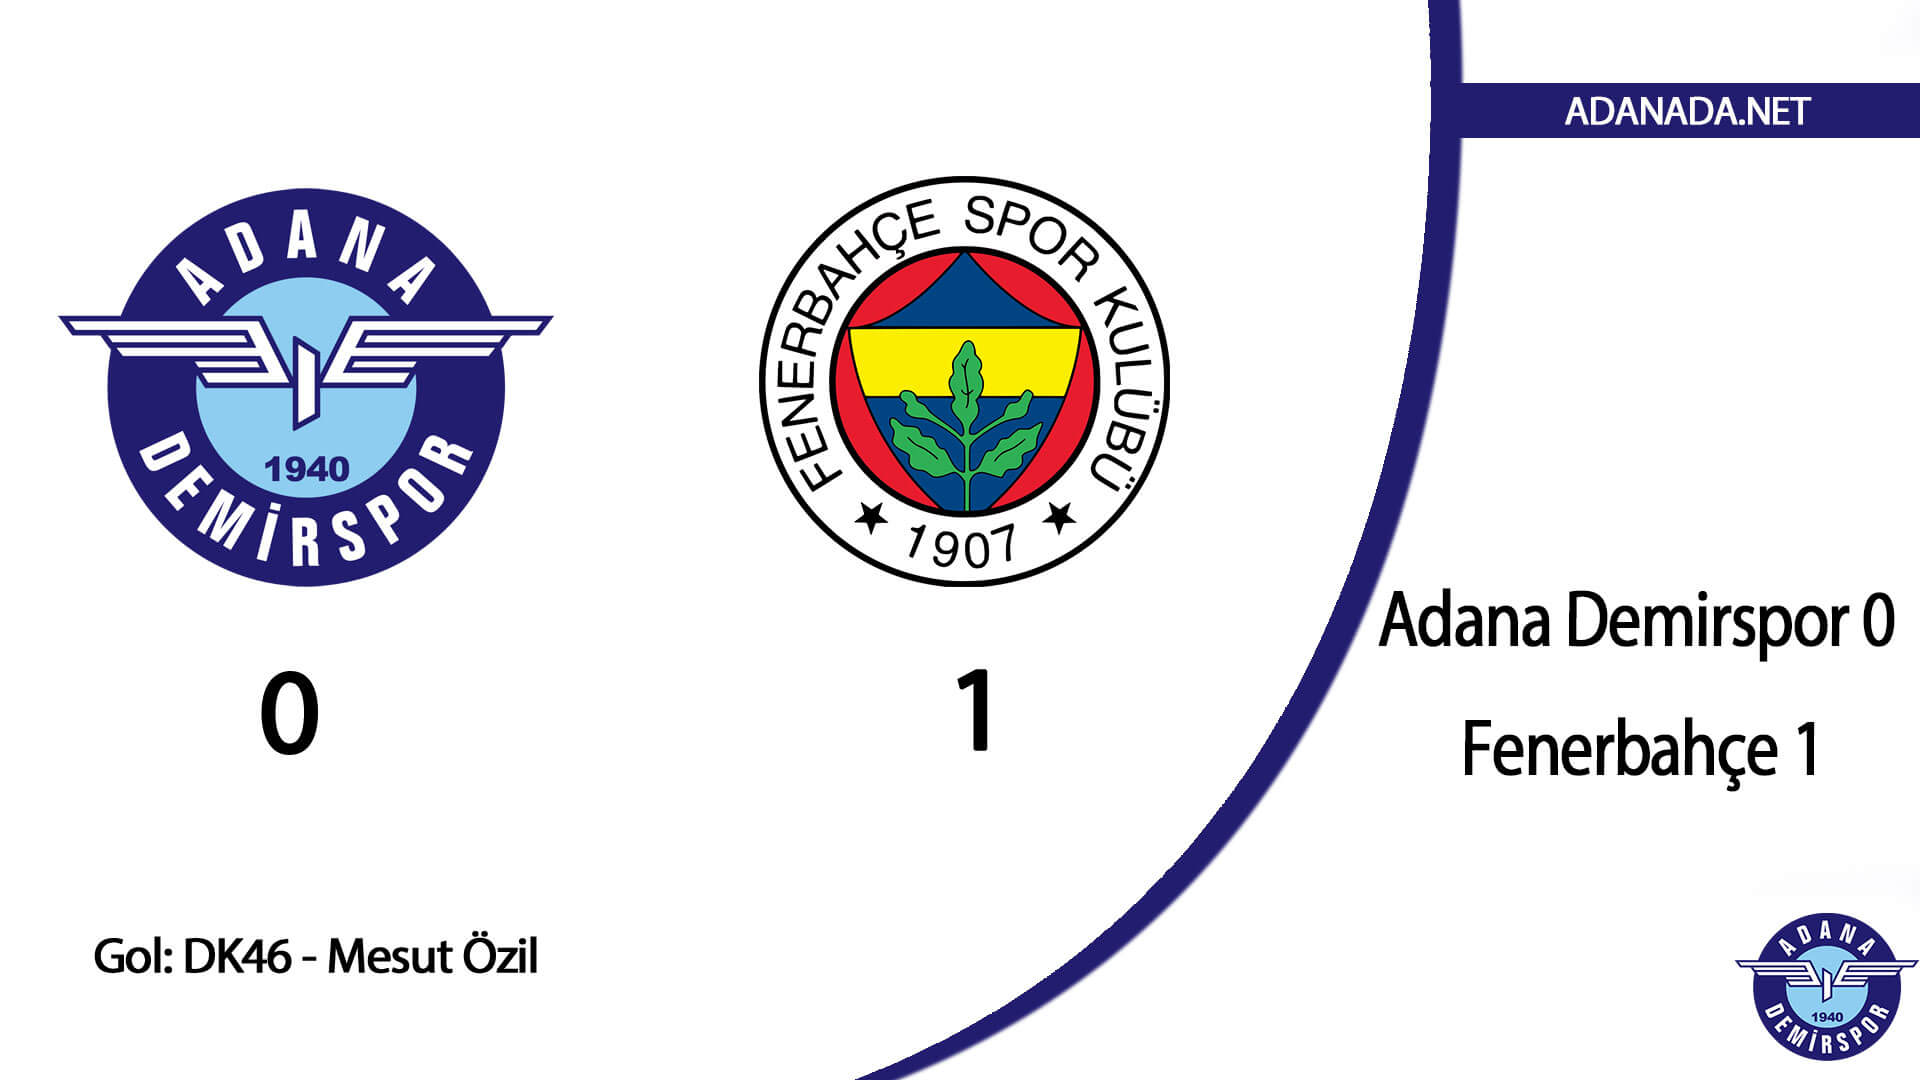 Adana Demirspor 0 – Fenerbahçe 1